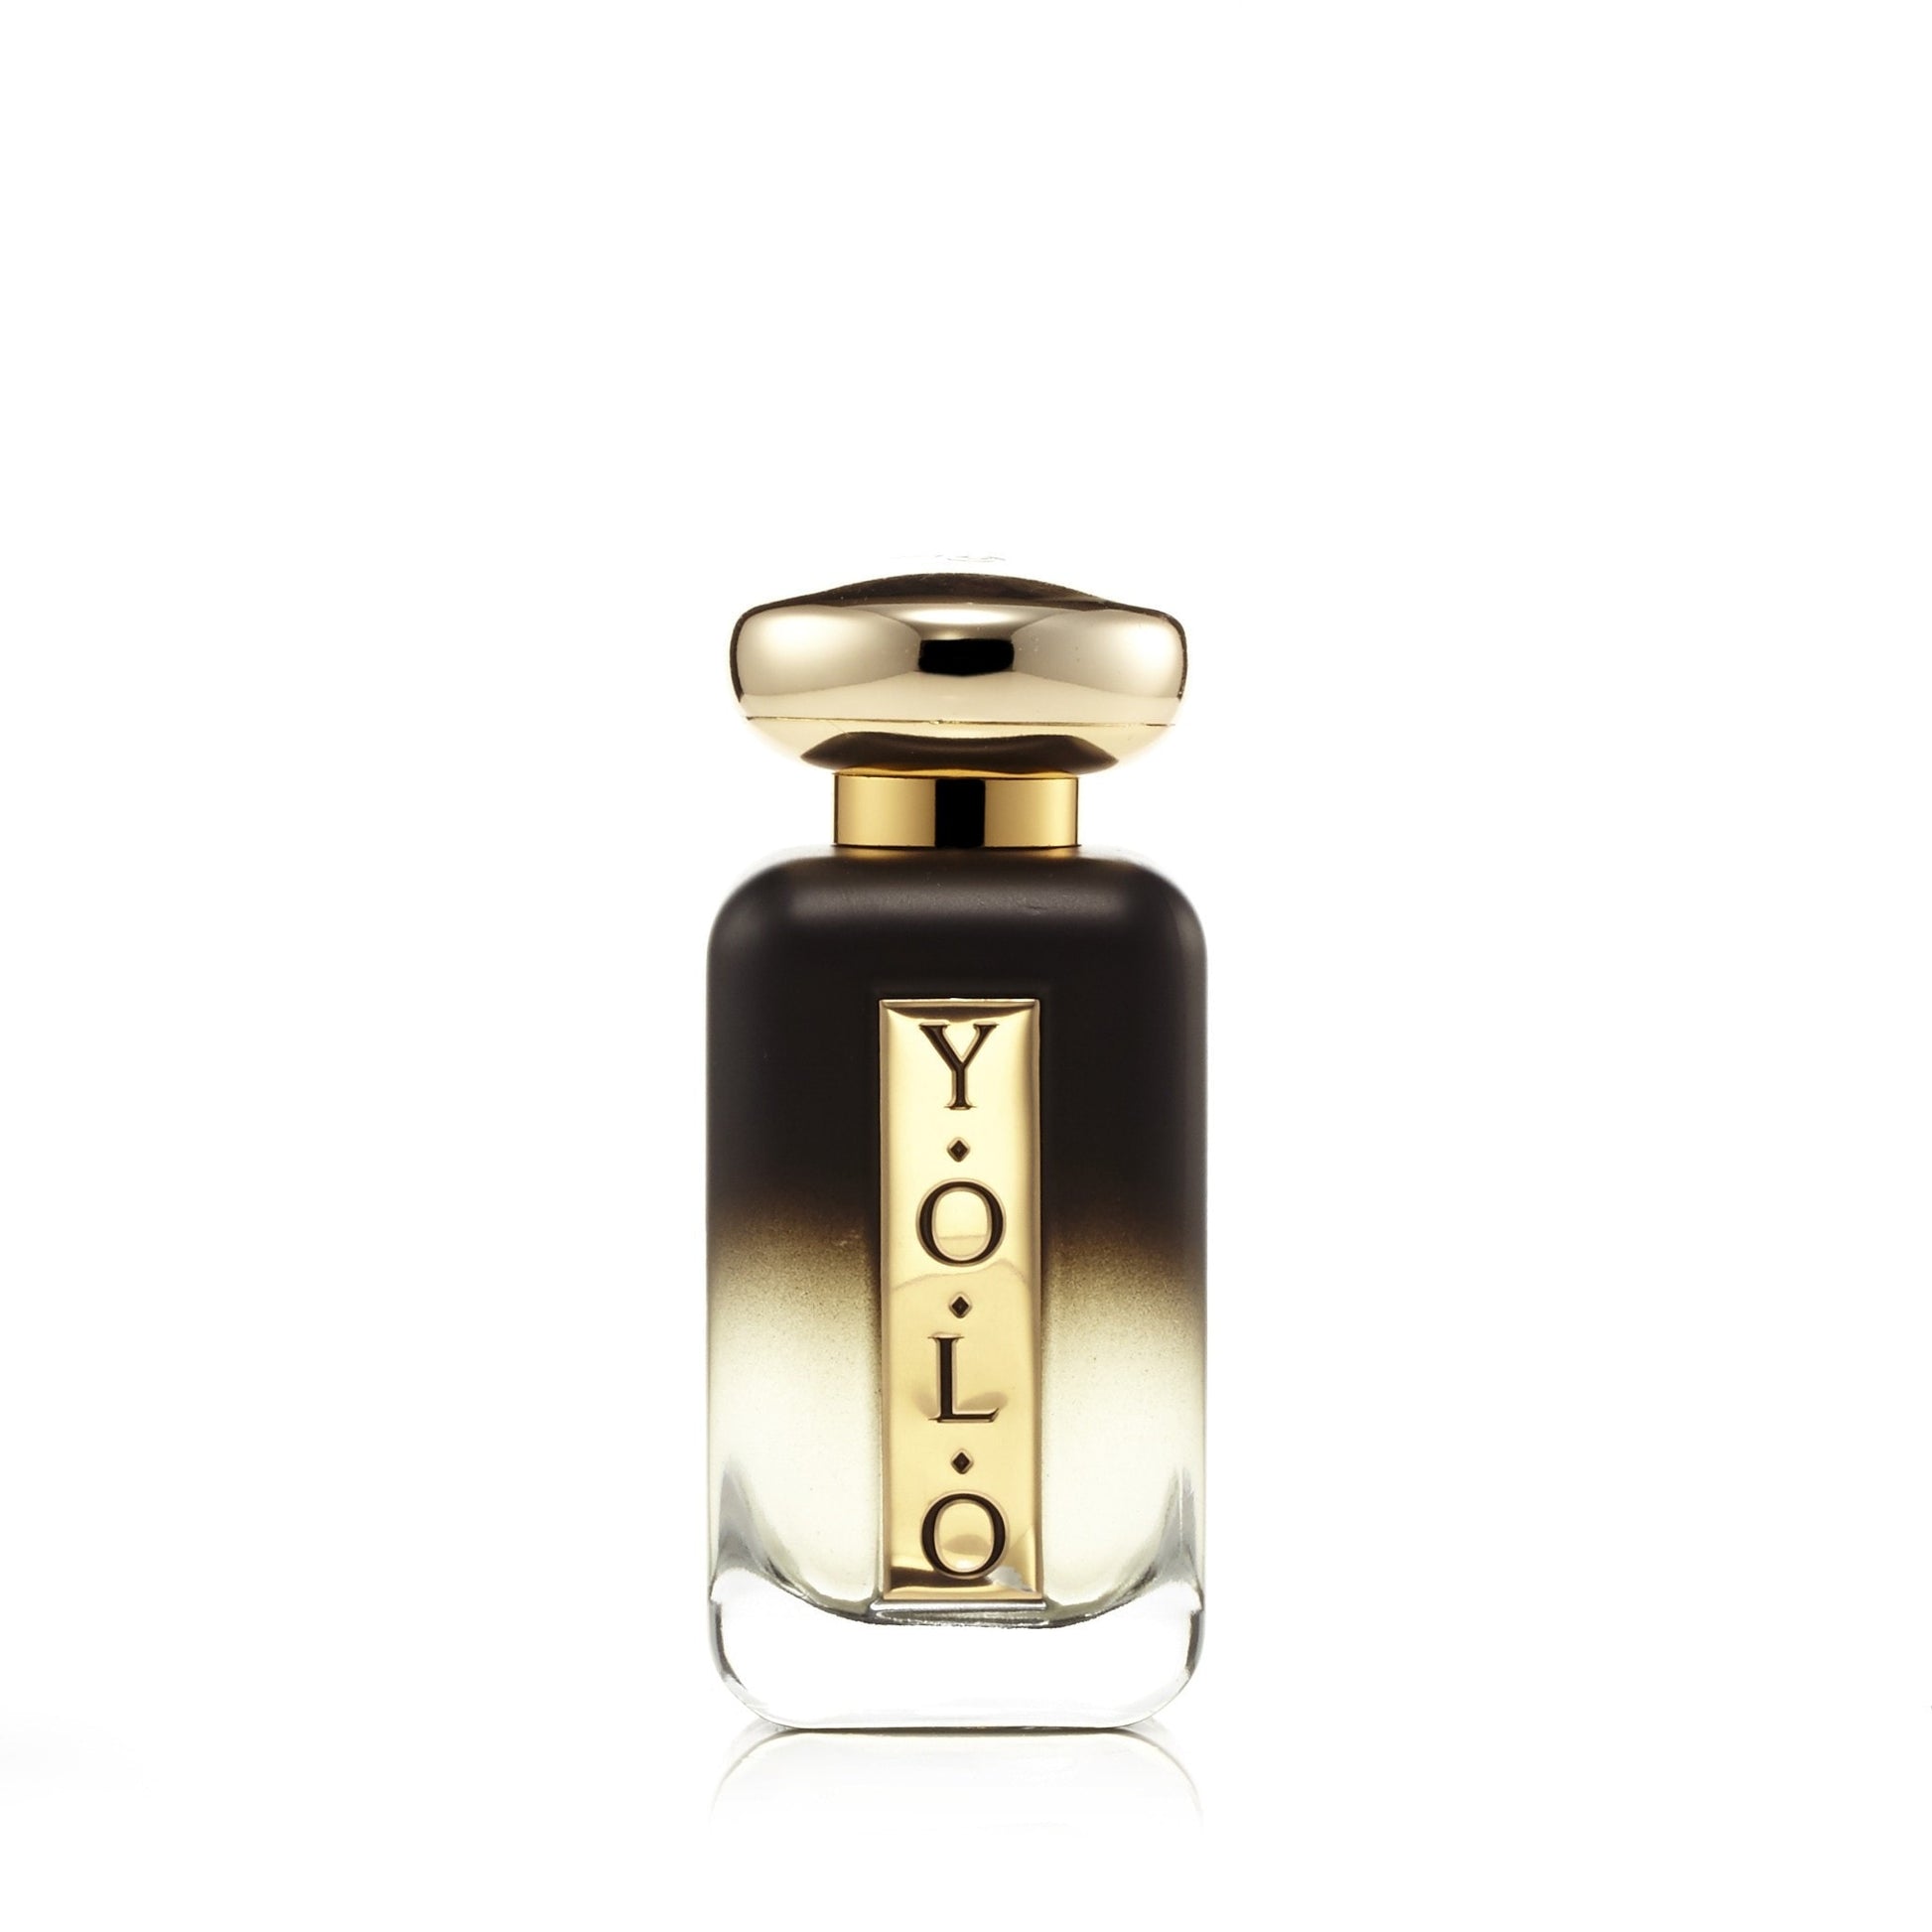 Yolo Eau de Parfum Spray for Women 3.3 oz. Click to open in modal